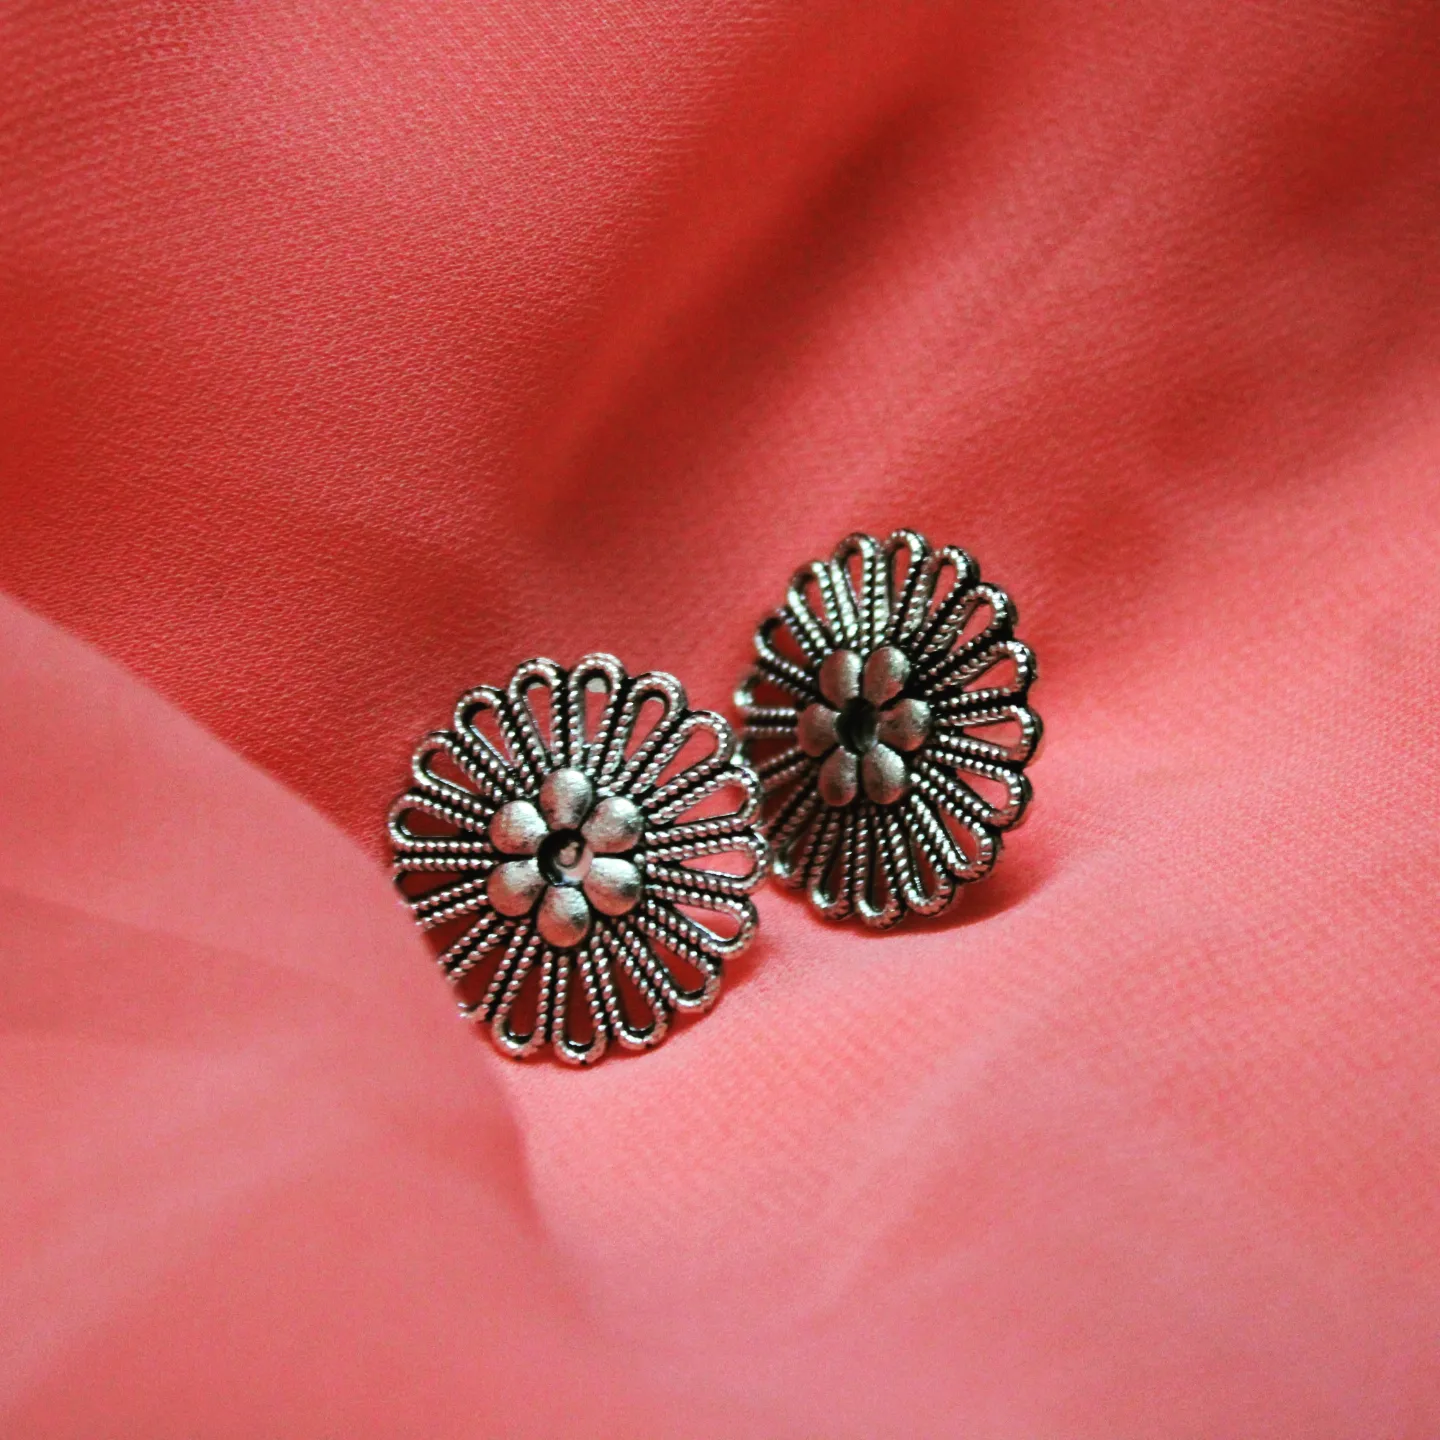 Flower oxidised earrings uploaded by business on 1/21/2022